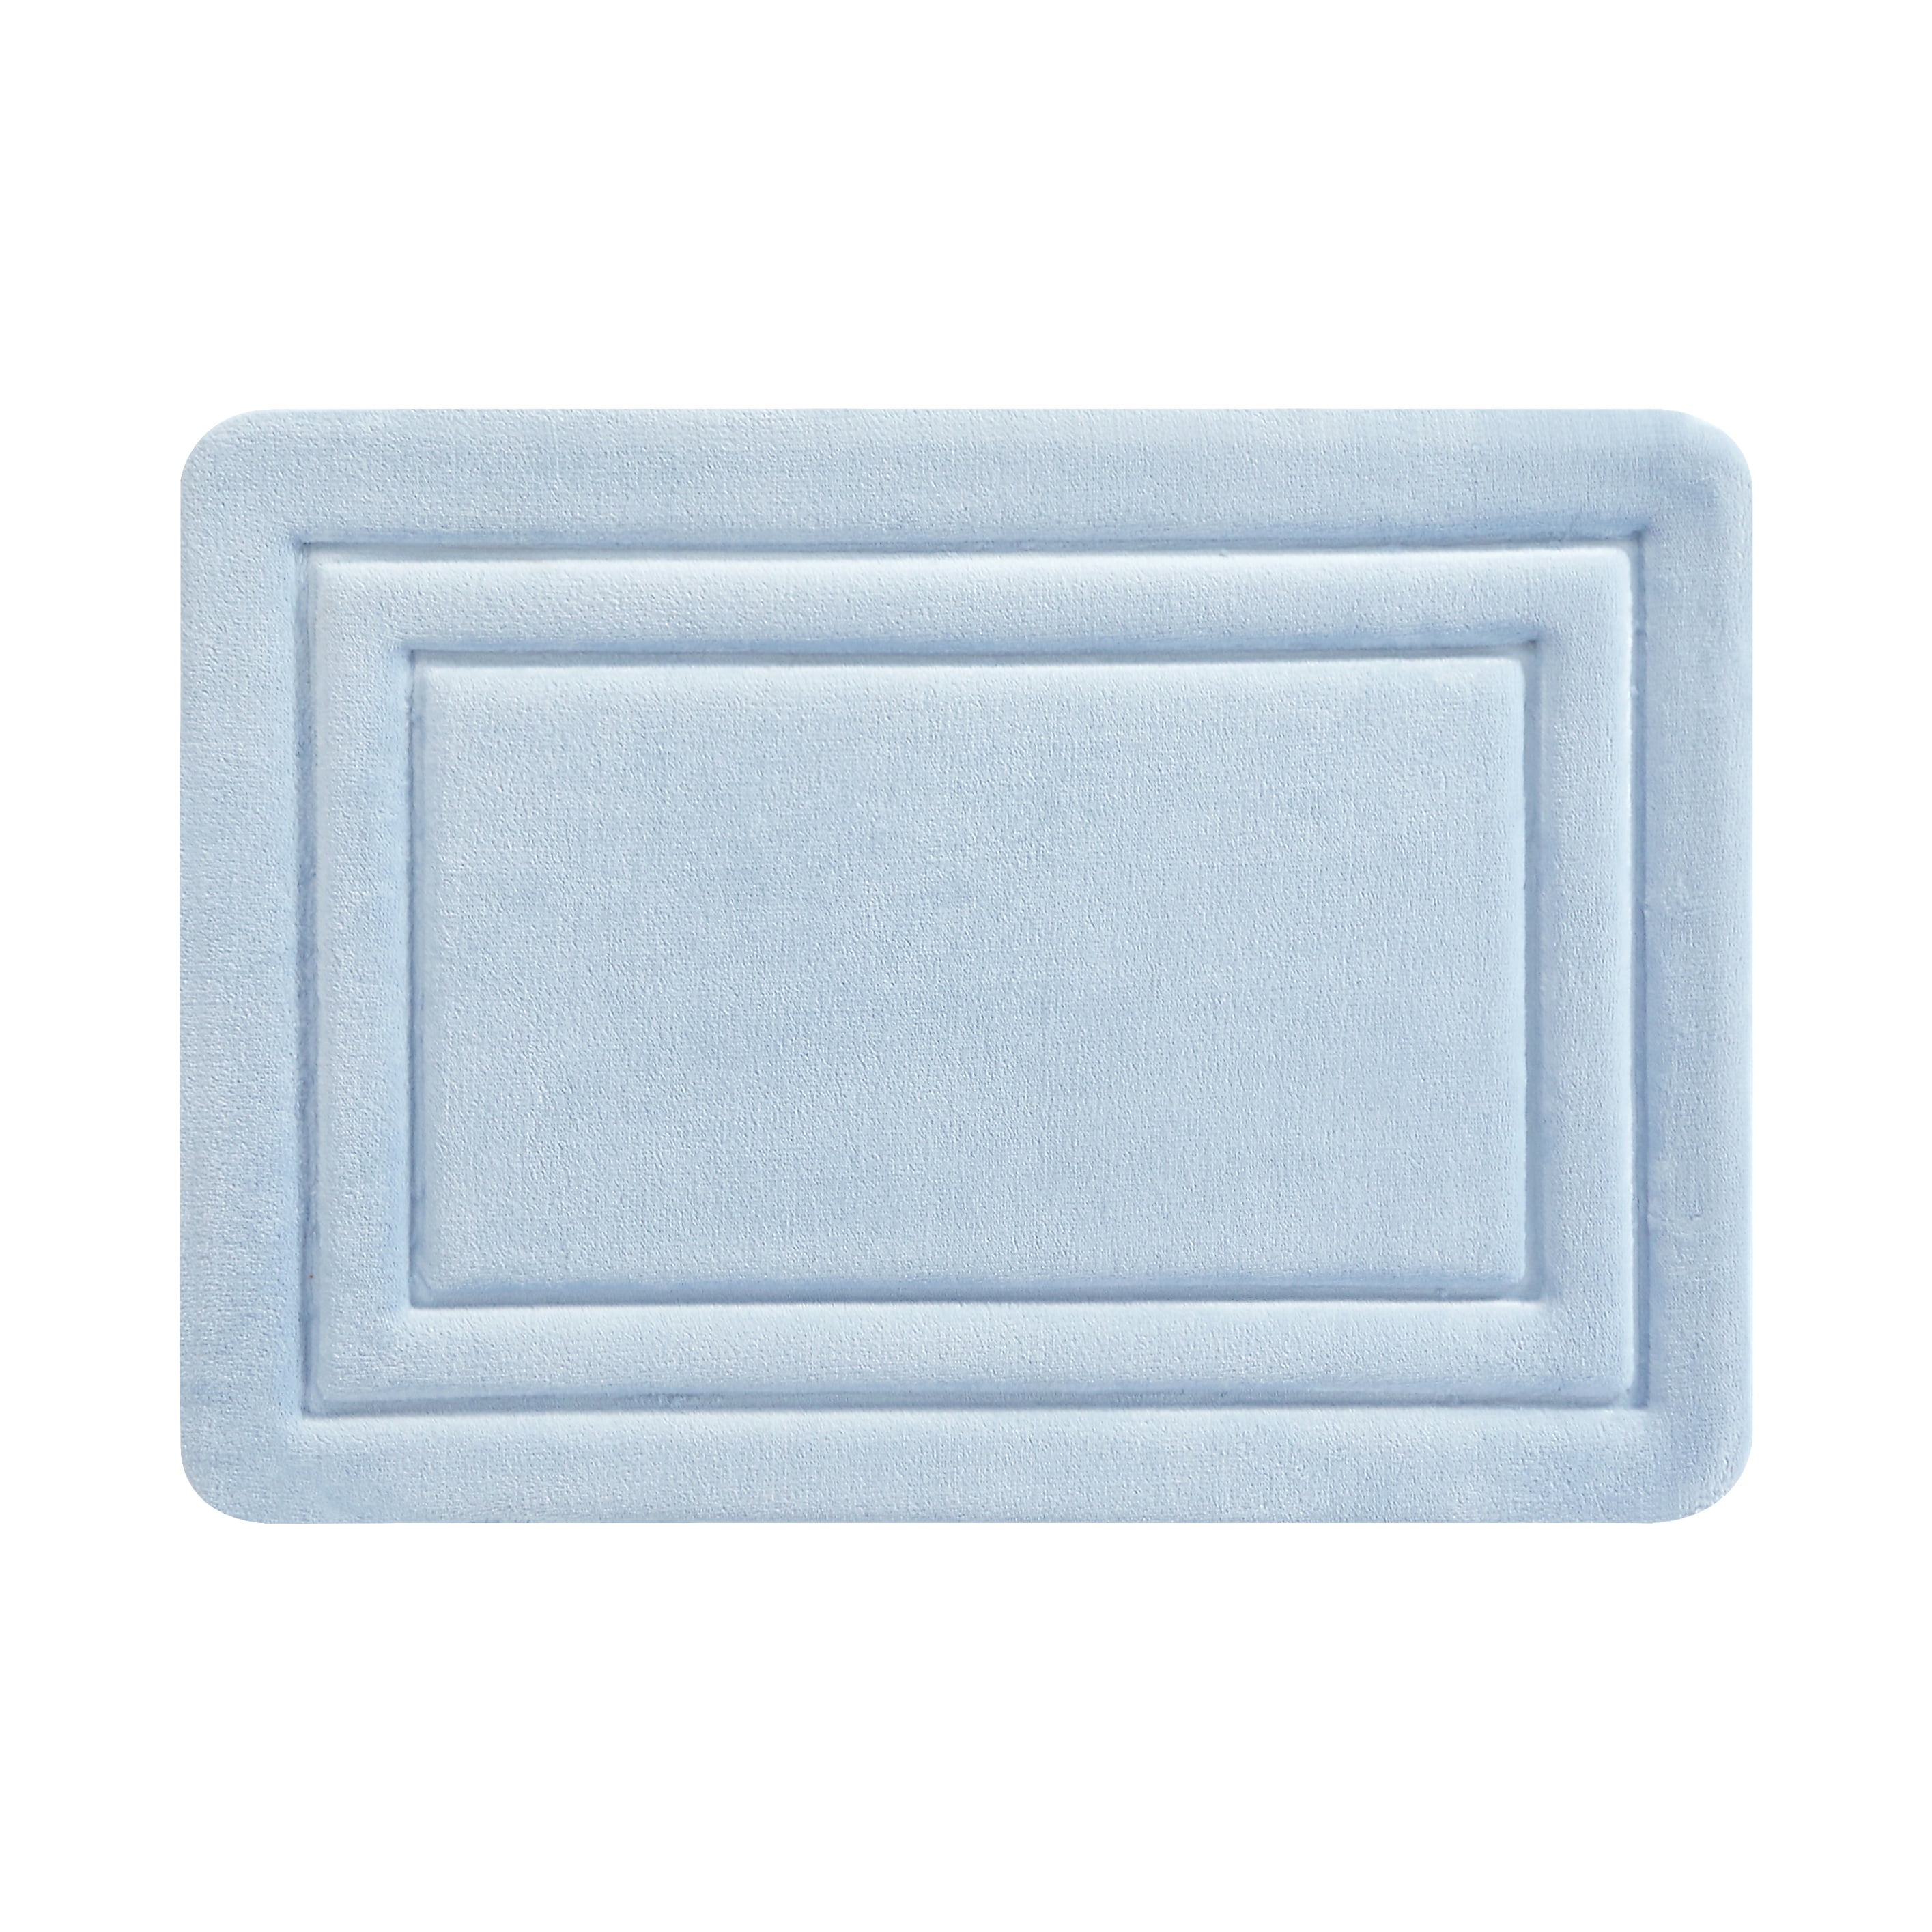 Truly Calm Antimicrobial Memory Foam Bath Rug, Set of 2 - Blue